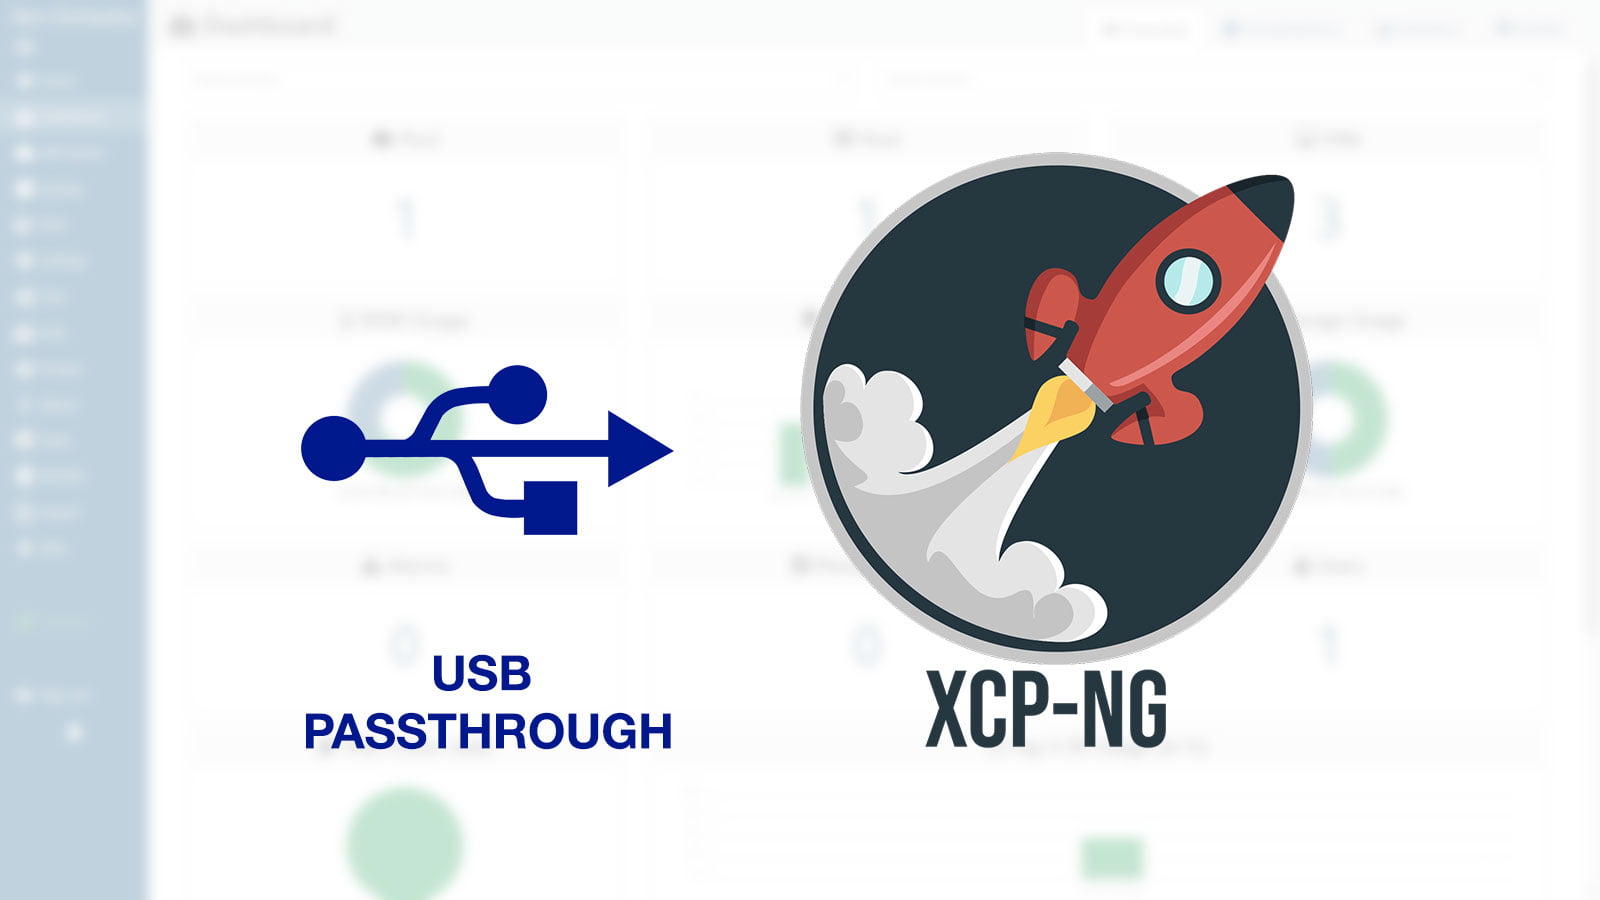 [XCP-ng] Hướng dẫn thiết lập USB Passthrough cho máy ảo